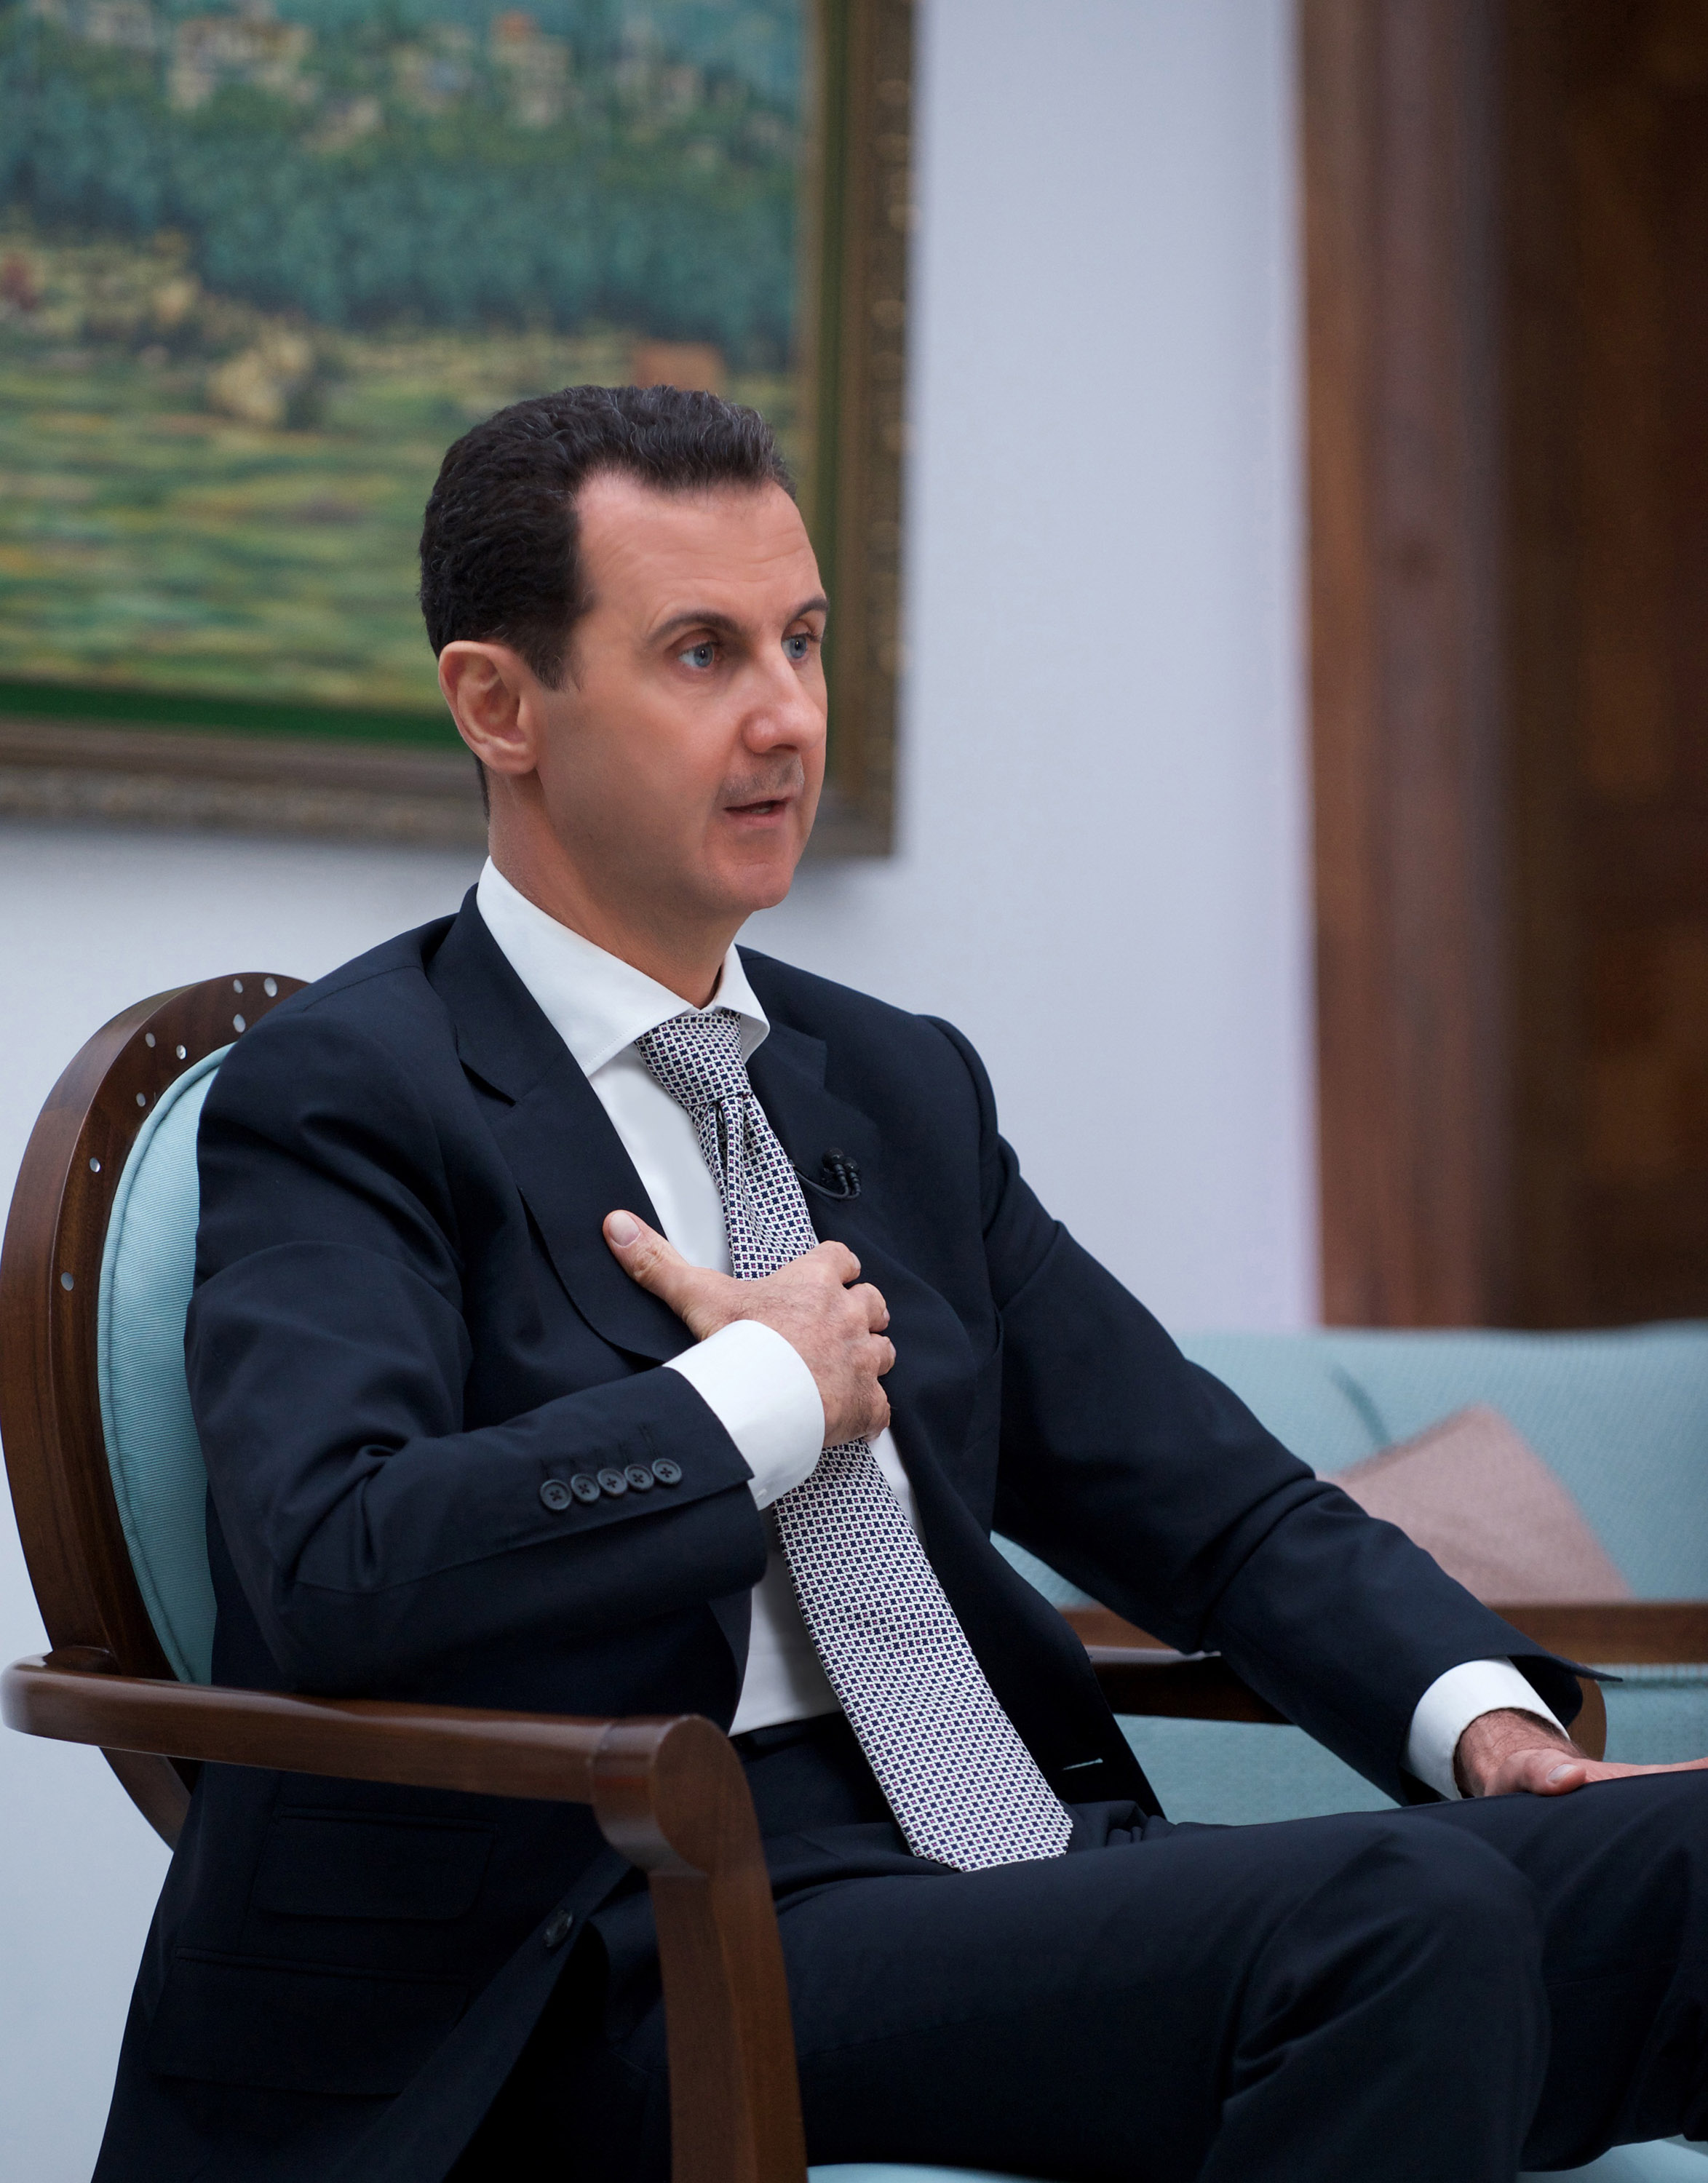 الرئيس بشار الأسد فى أول حوار لوسيلة إعلام يابانية منذ اندلاع الحرب السورية